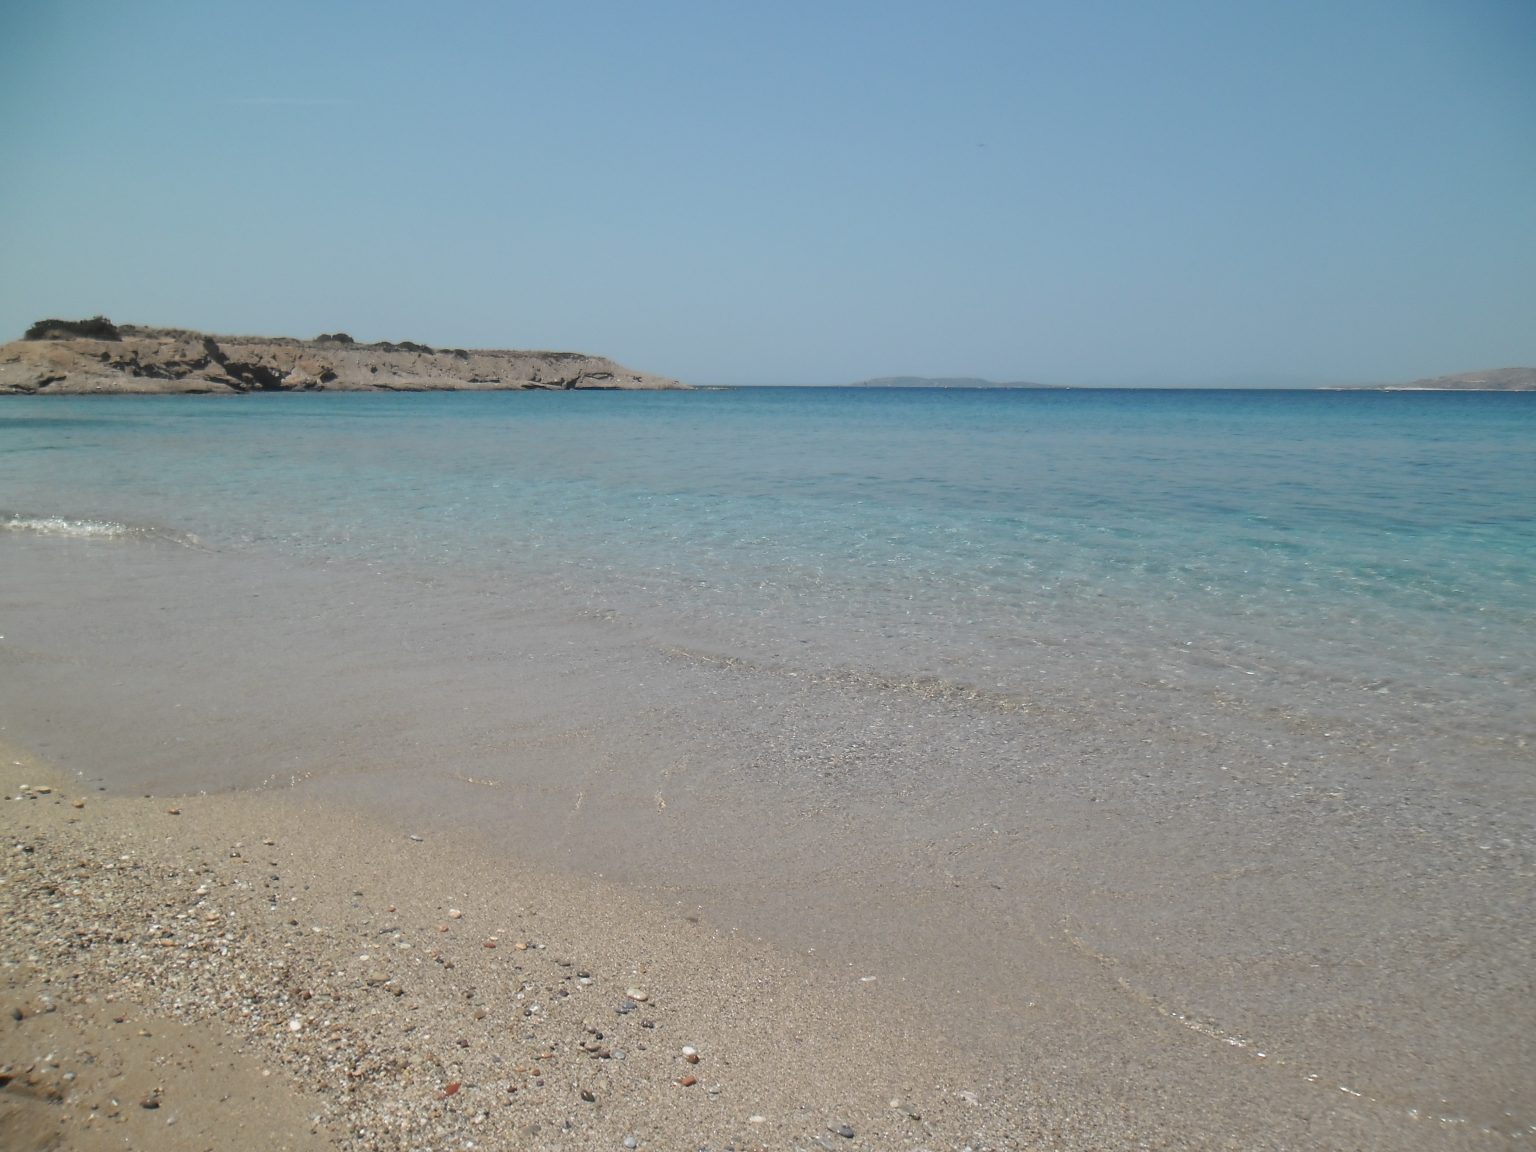 Κατάλληλες για κολύμβηση οι παραλίες του δήμου Κρωπίας ανακοίνωσε η δημοτική αρχή